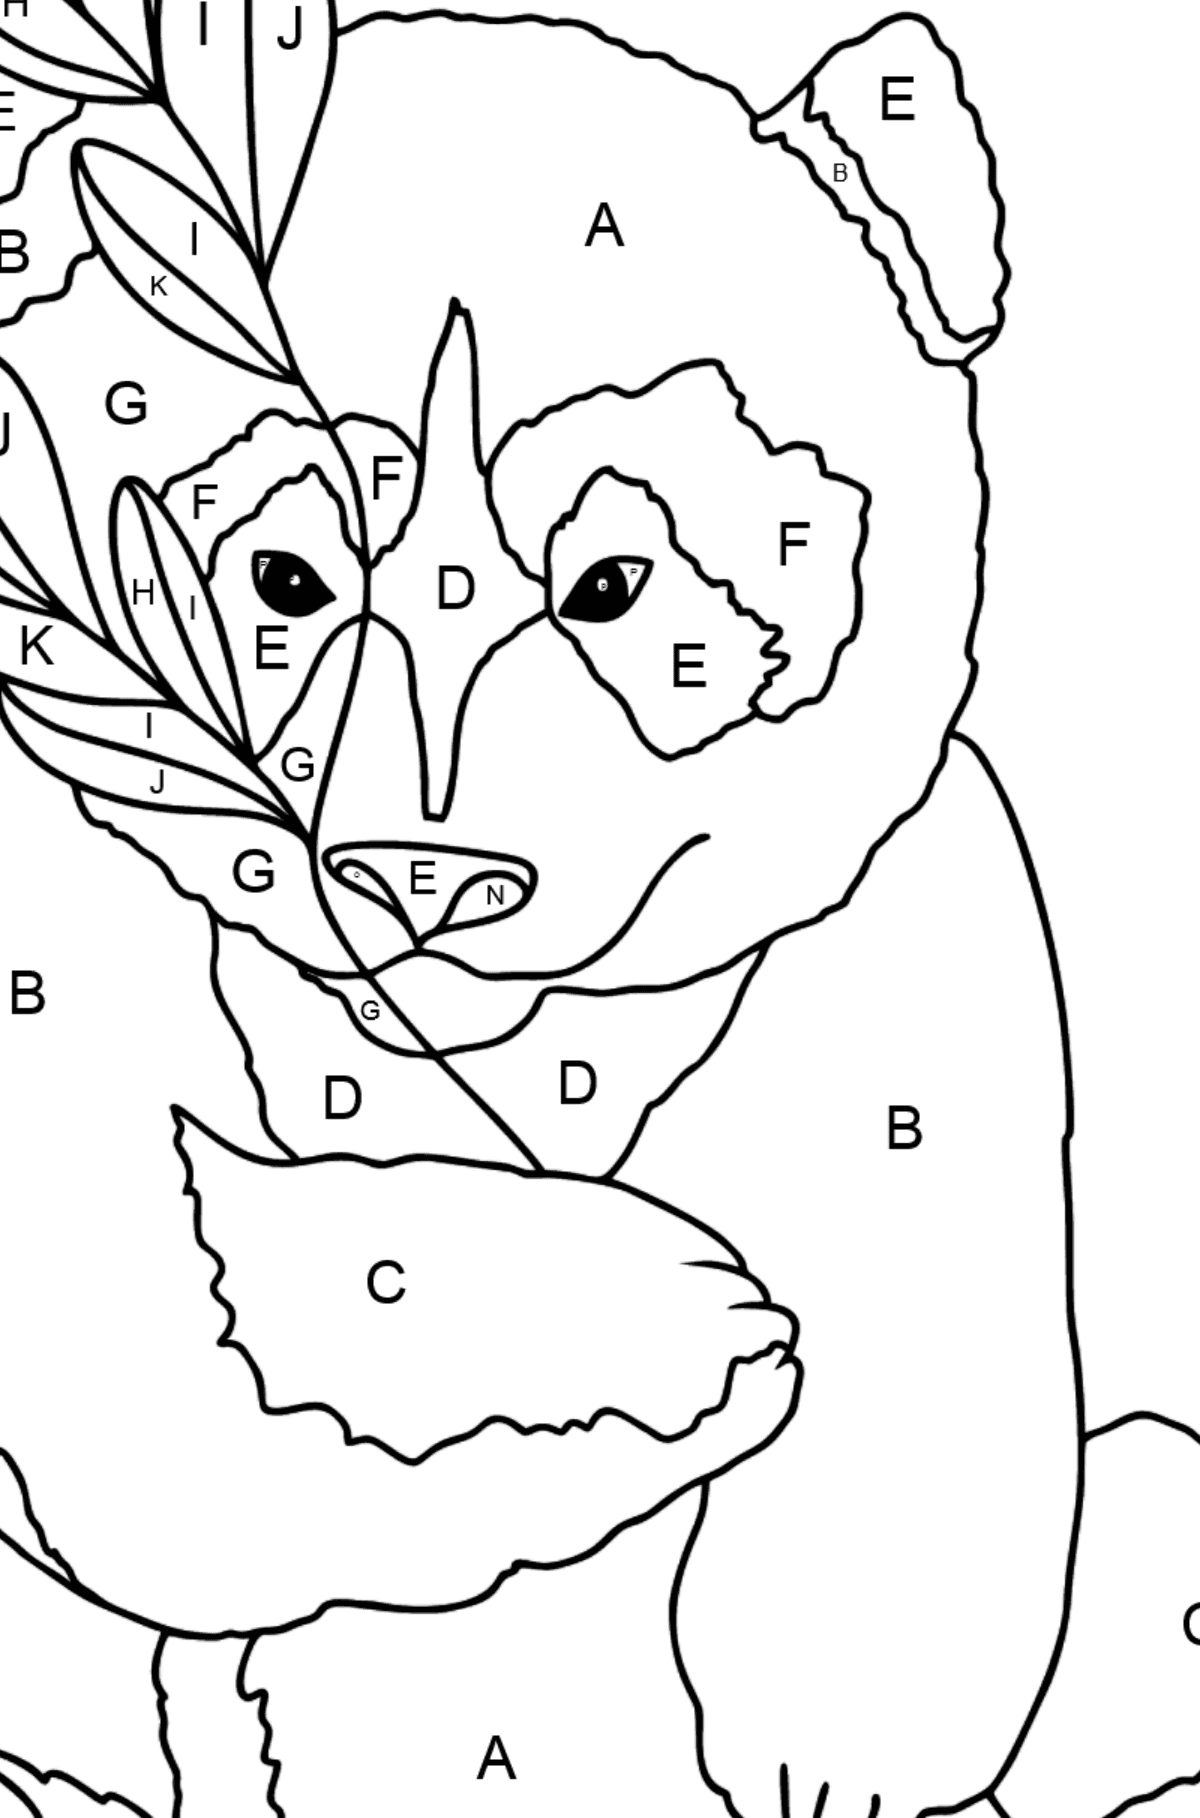 Coloriage - Un panda aime les feuilles de bambou - Coloriage par Lettres pour les Enfants